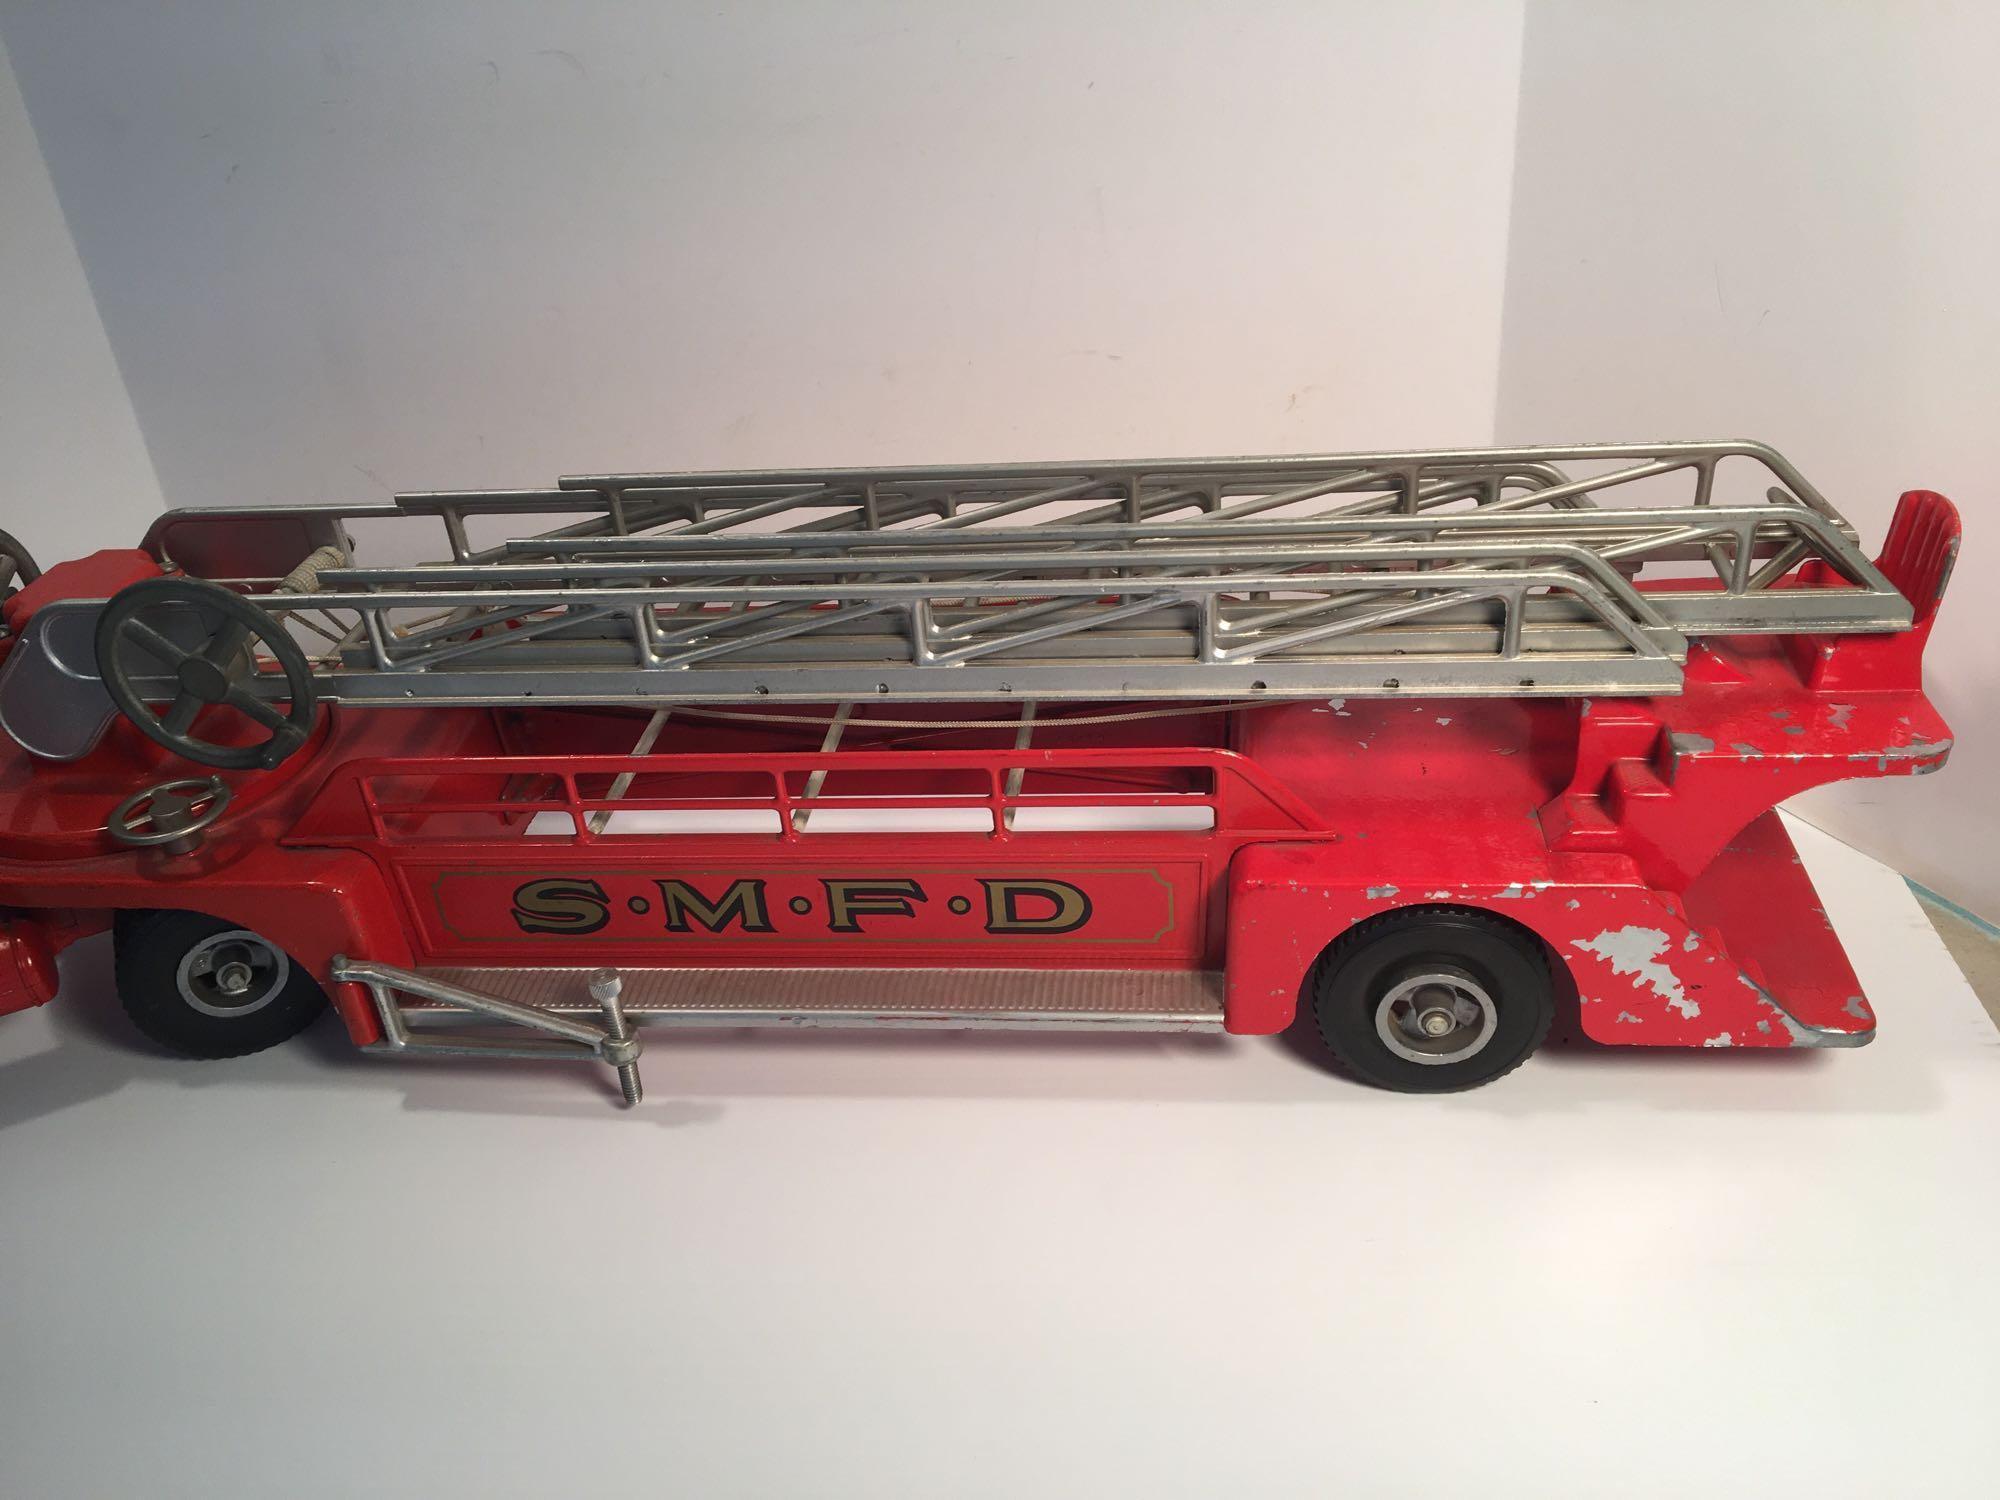 Vintage pressed metal SMITH MILLER No 3(SMFD) fire/ladder truck